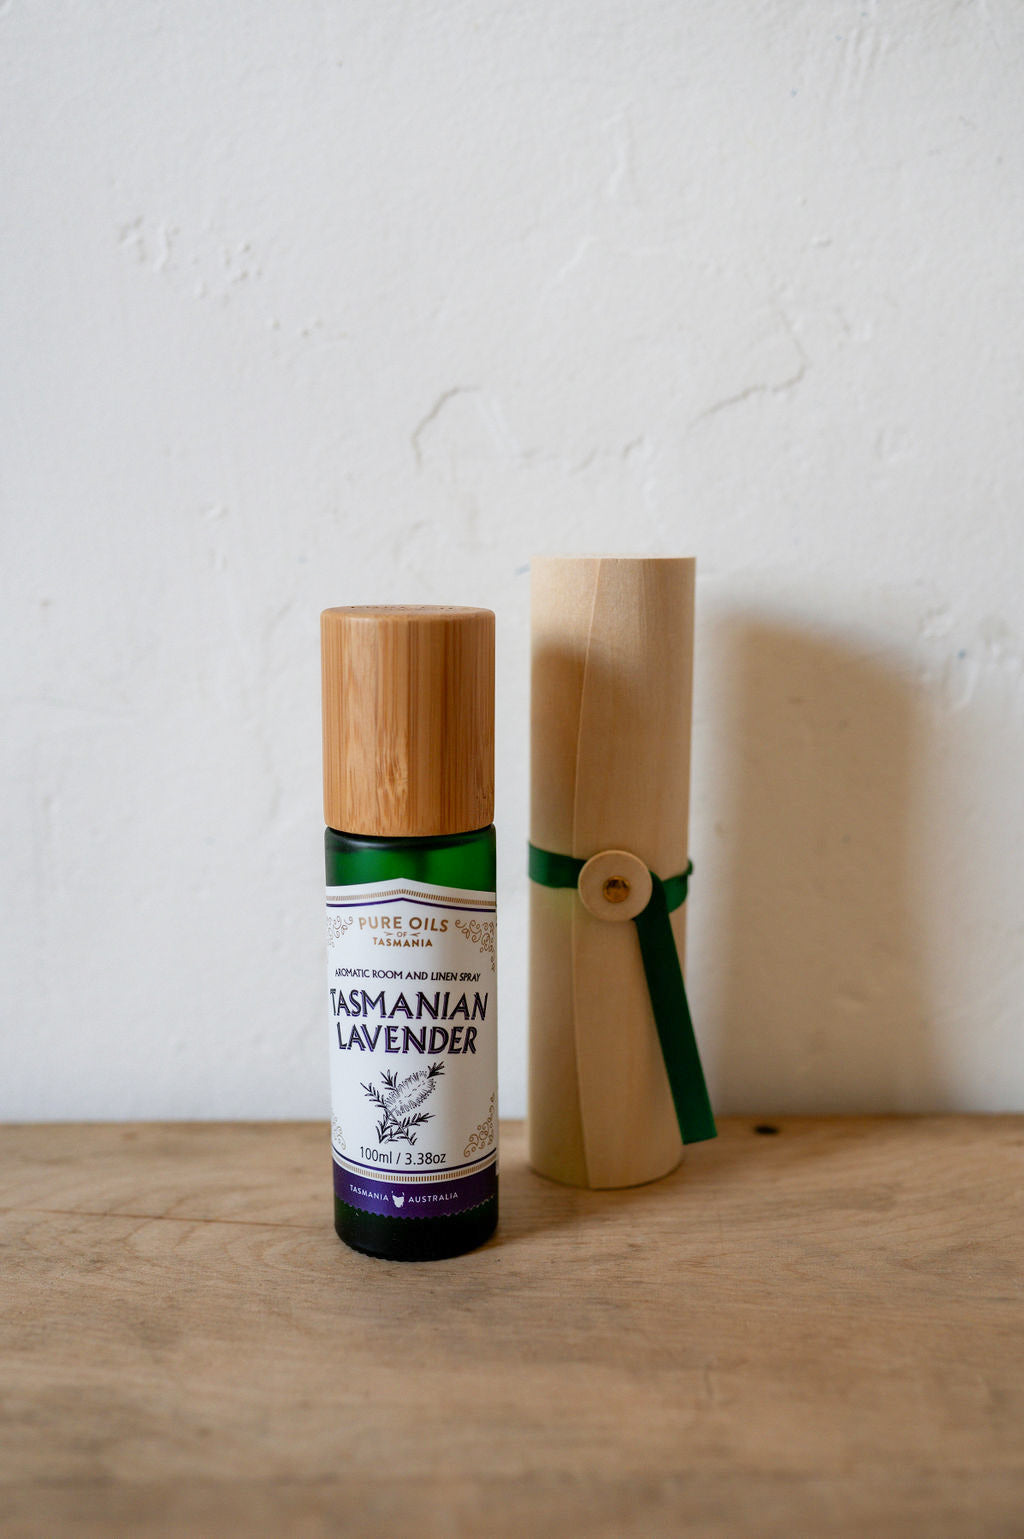 Pure Oils of Tasmania Tasmanian Rainwater Spritzer Tasmanian Lavender | Pure Oils of Tasmania | Miss Arthur | Home Goods | Tasmania